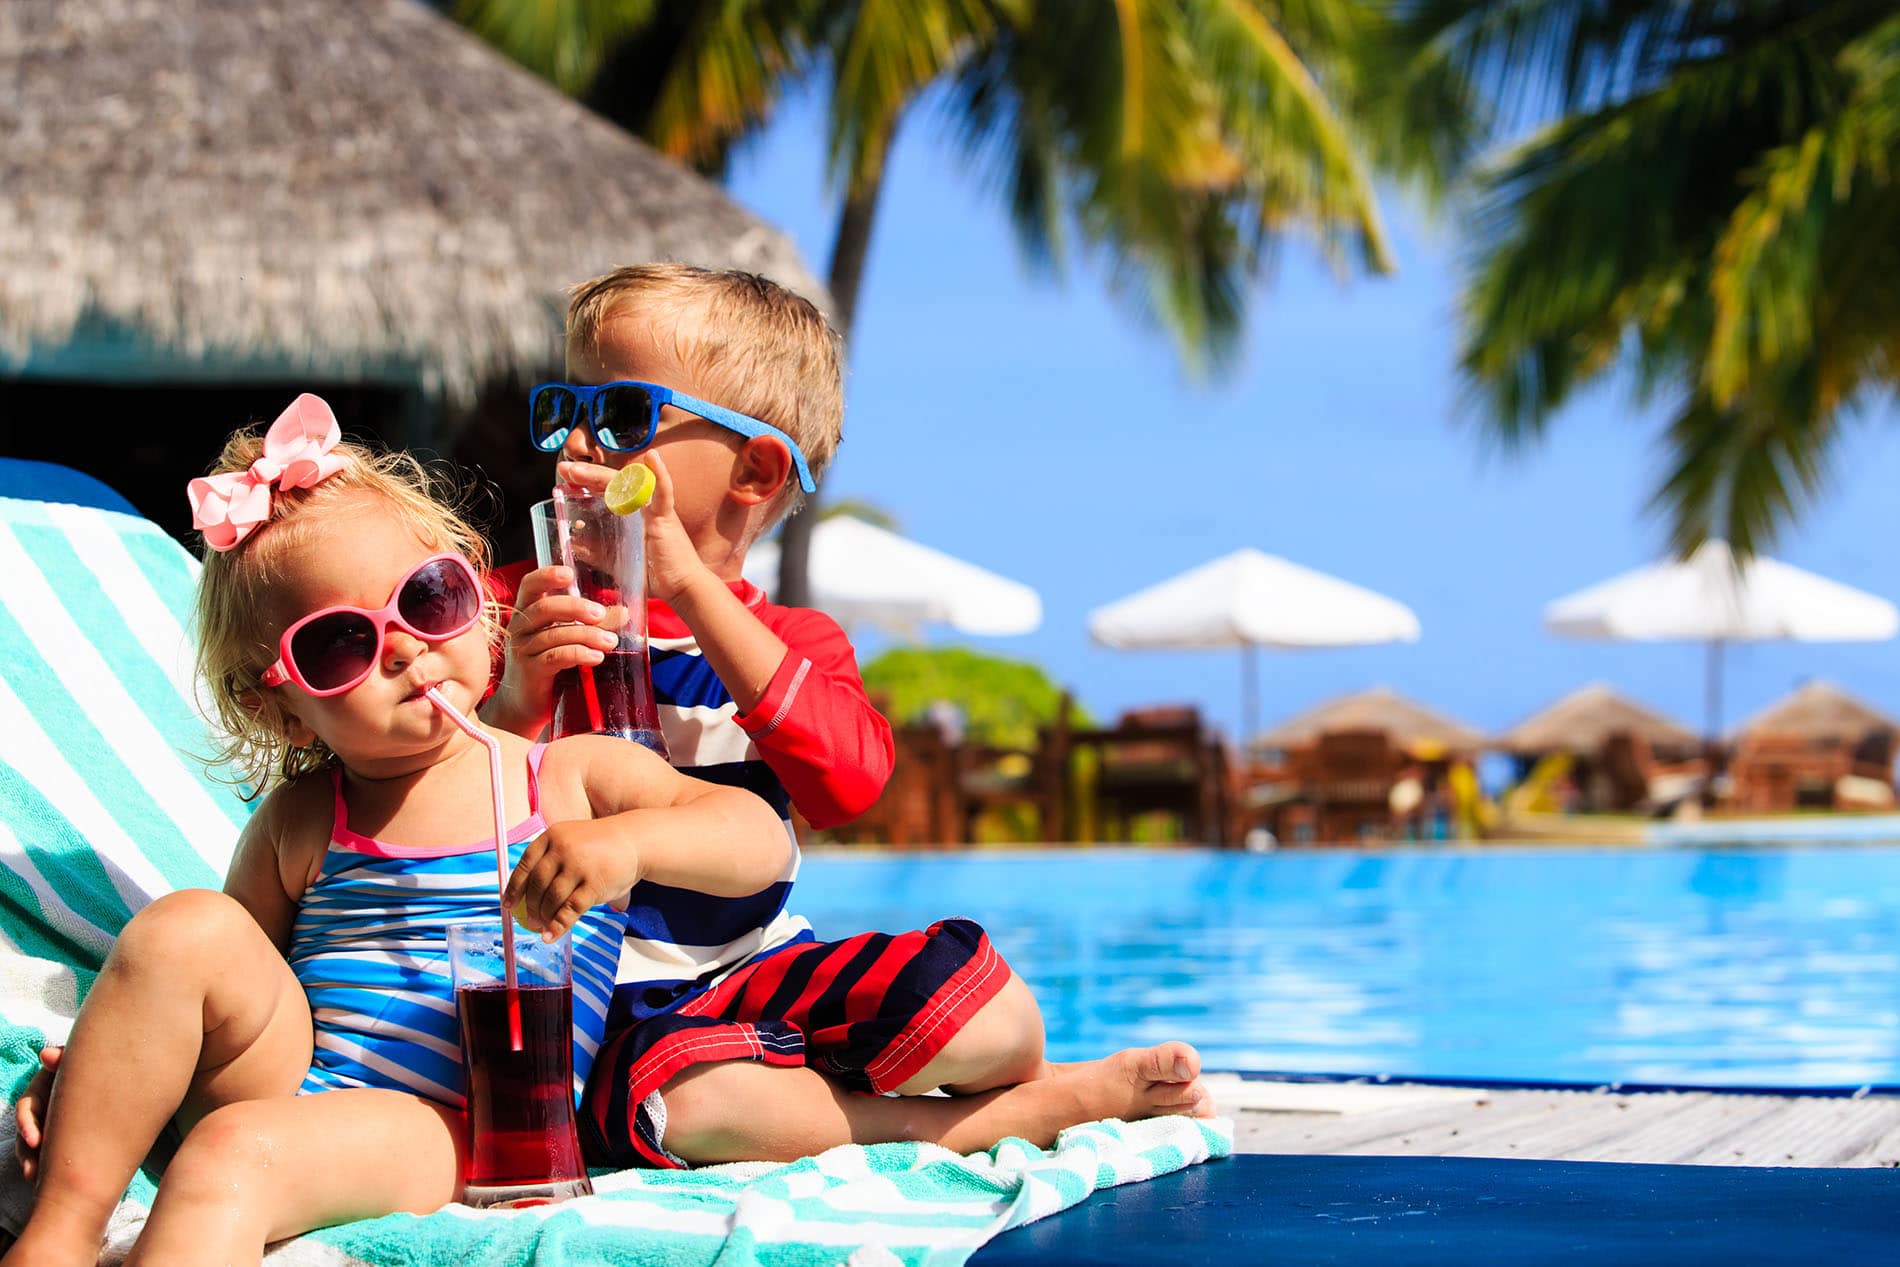 Lesen Sie ausgewählte Tipps für einen erholsamen Urlaub für Groß und Klein nach!